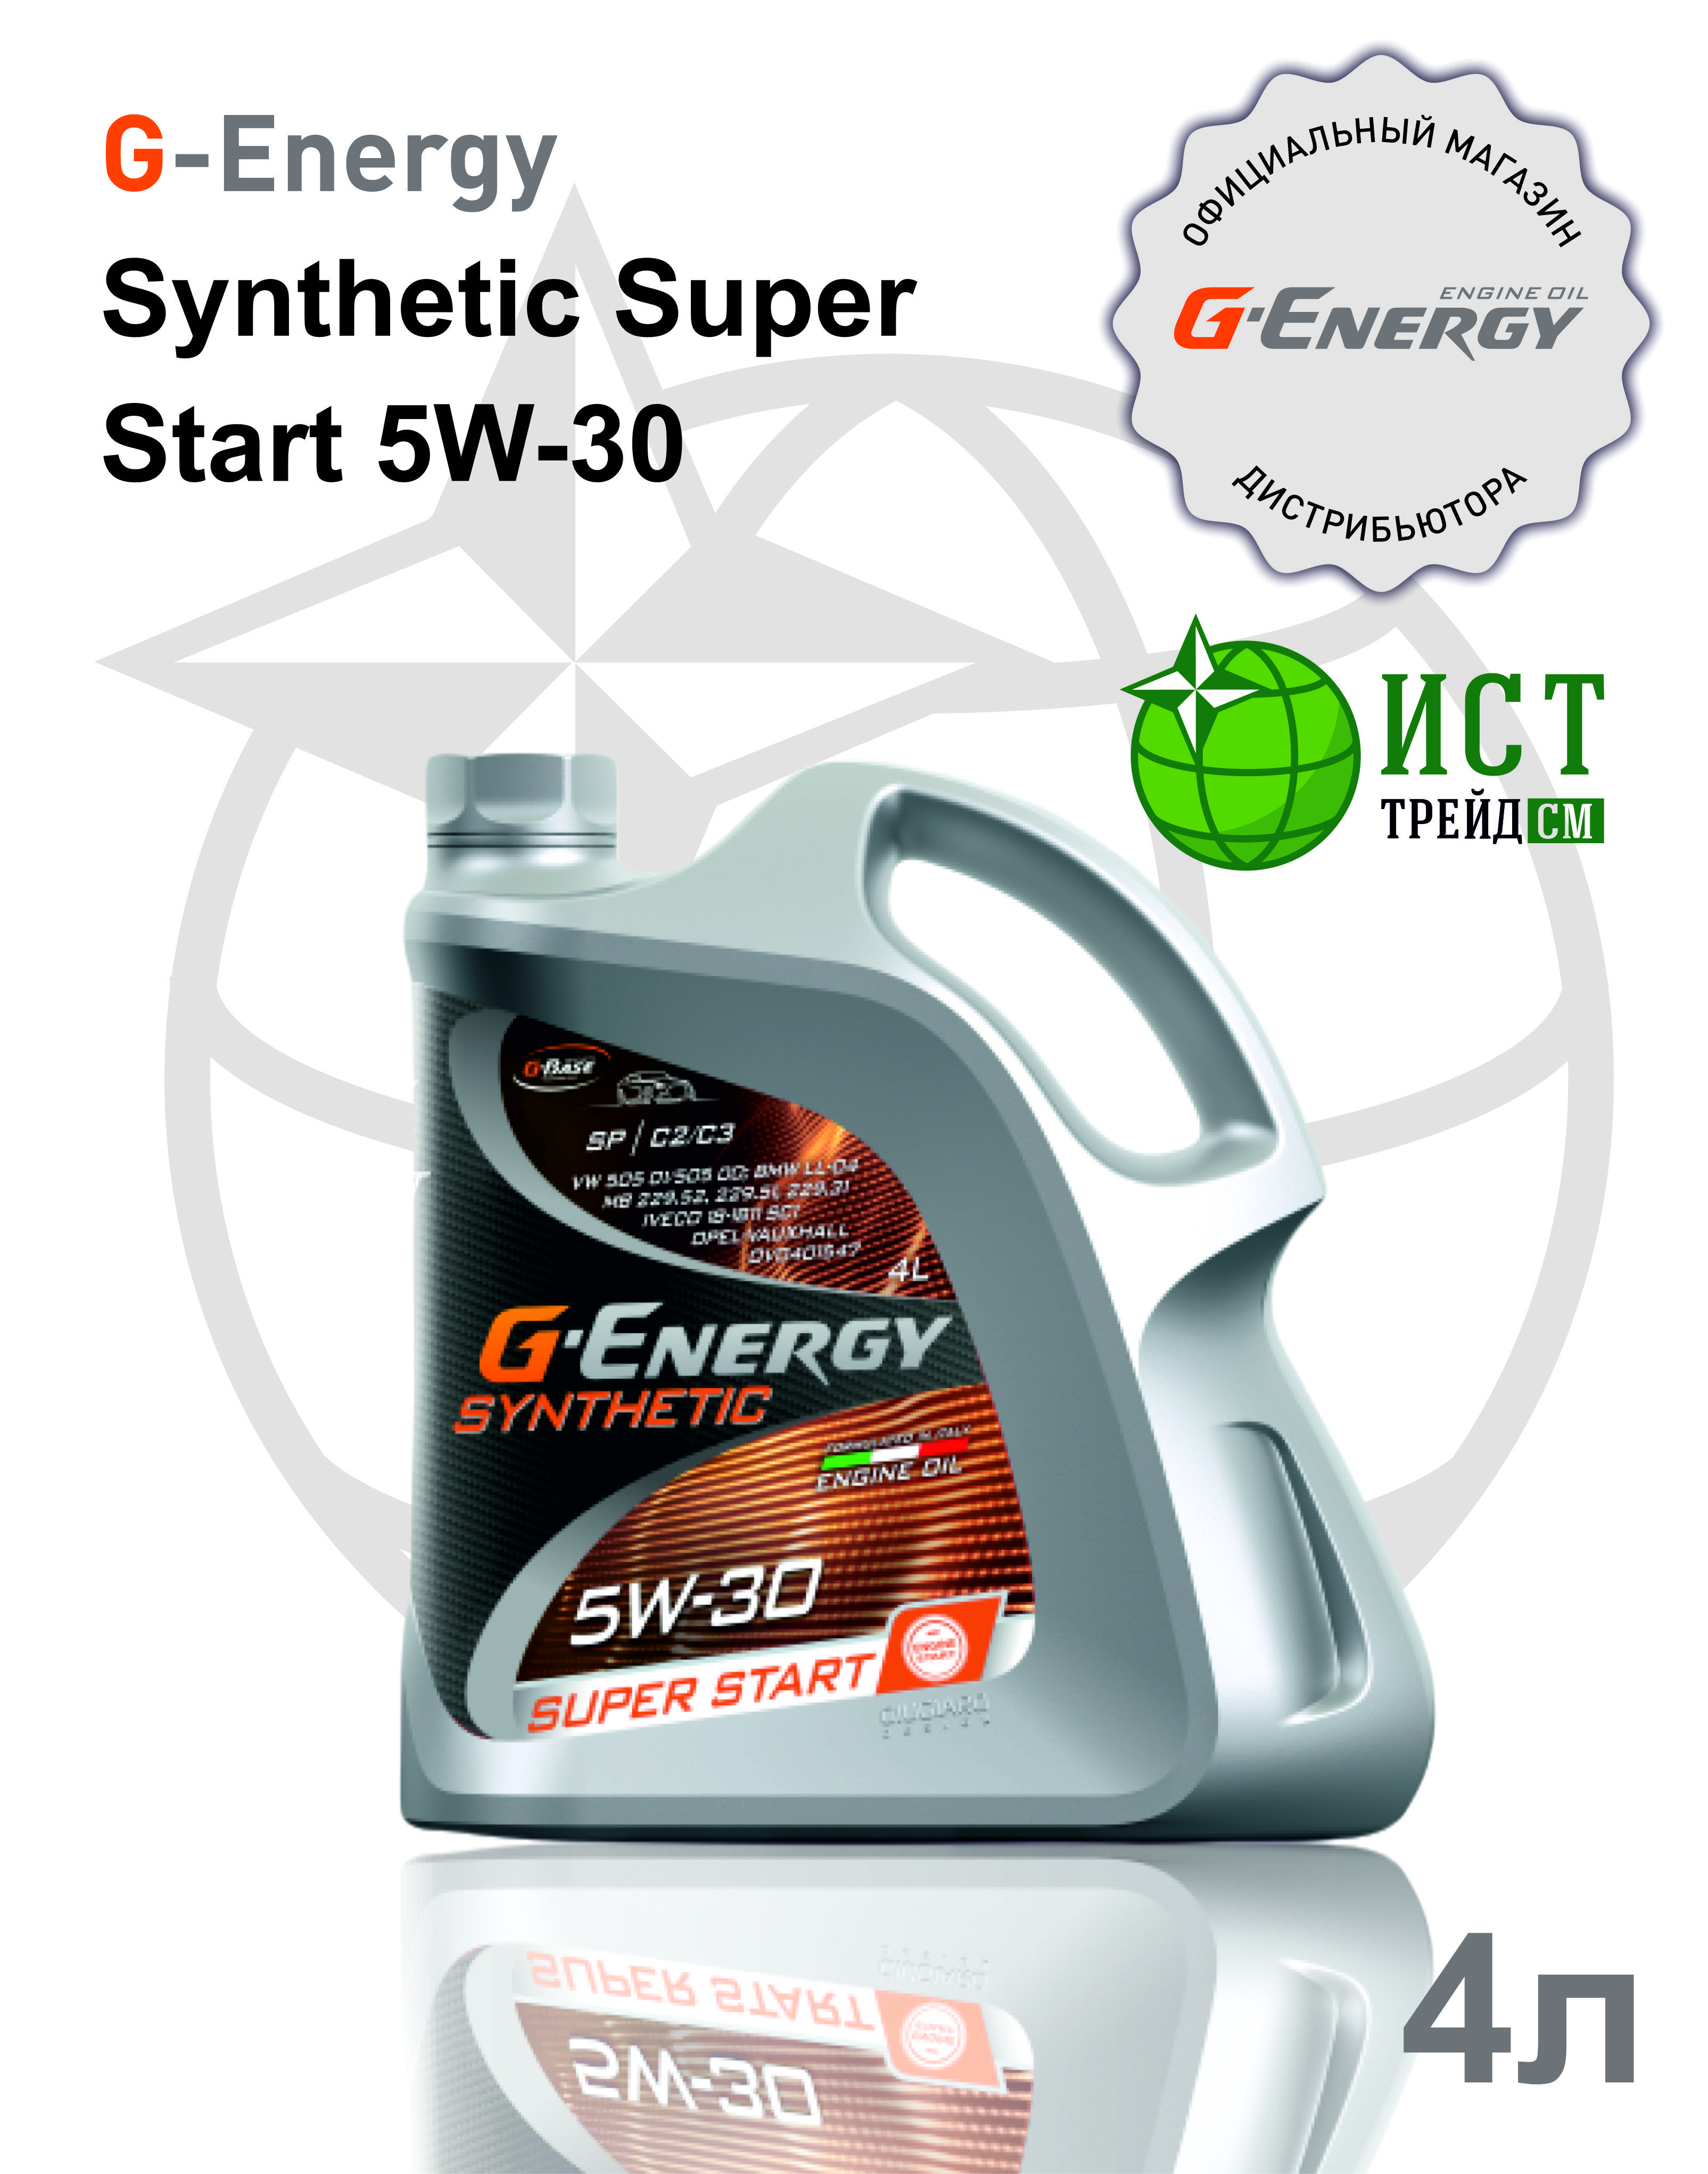 Super start 5w30. G-Energy Synthetic super start 5w-30.